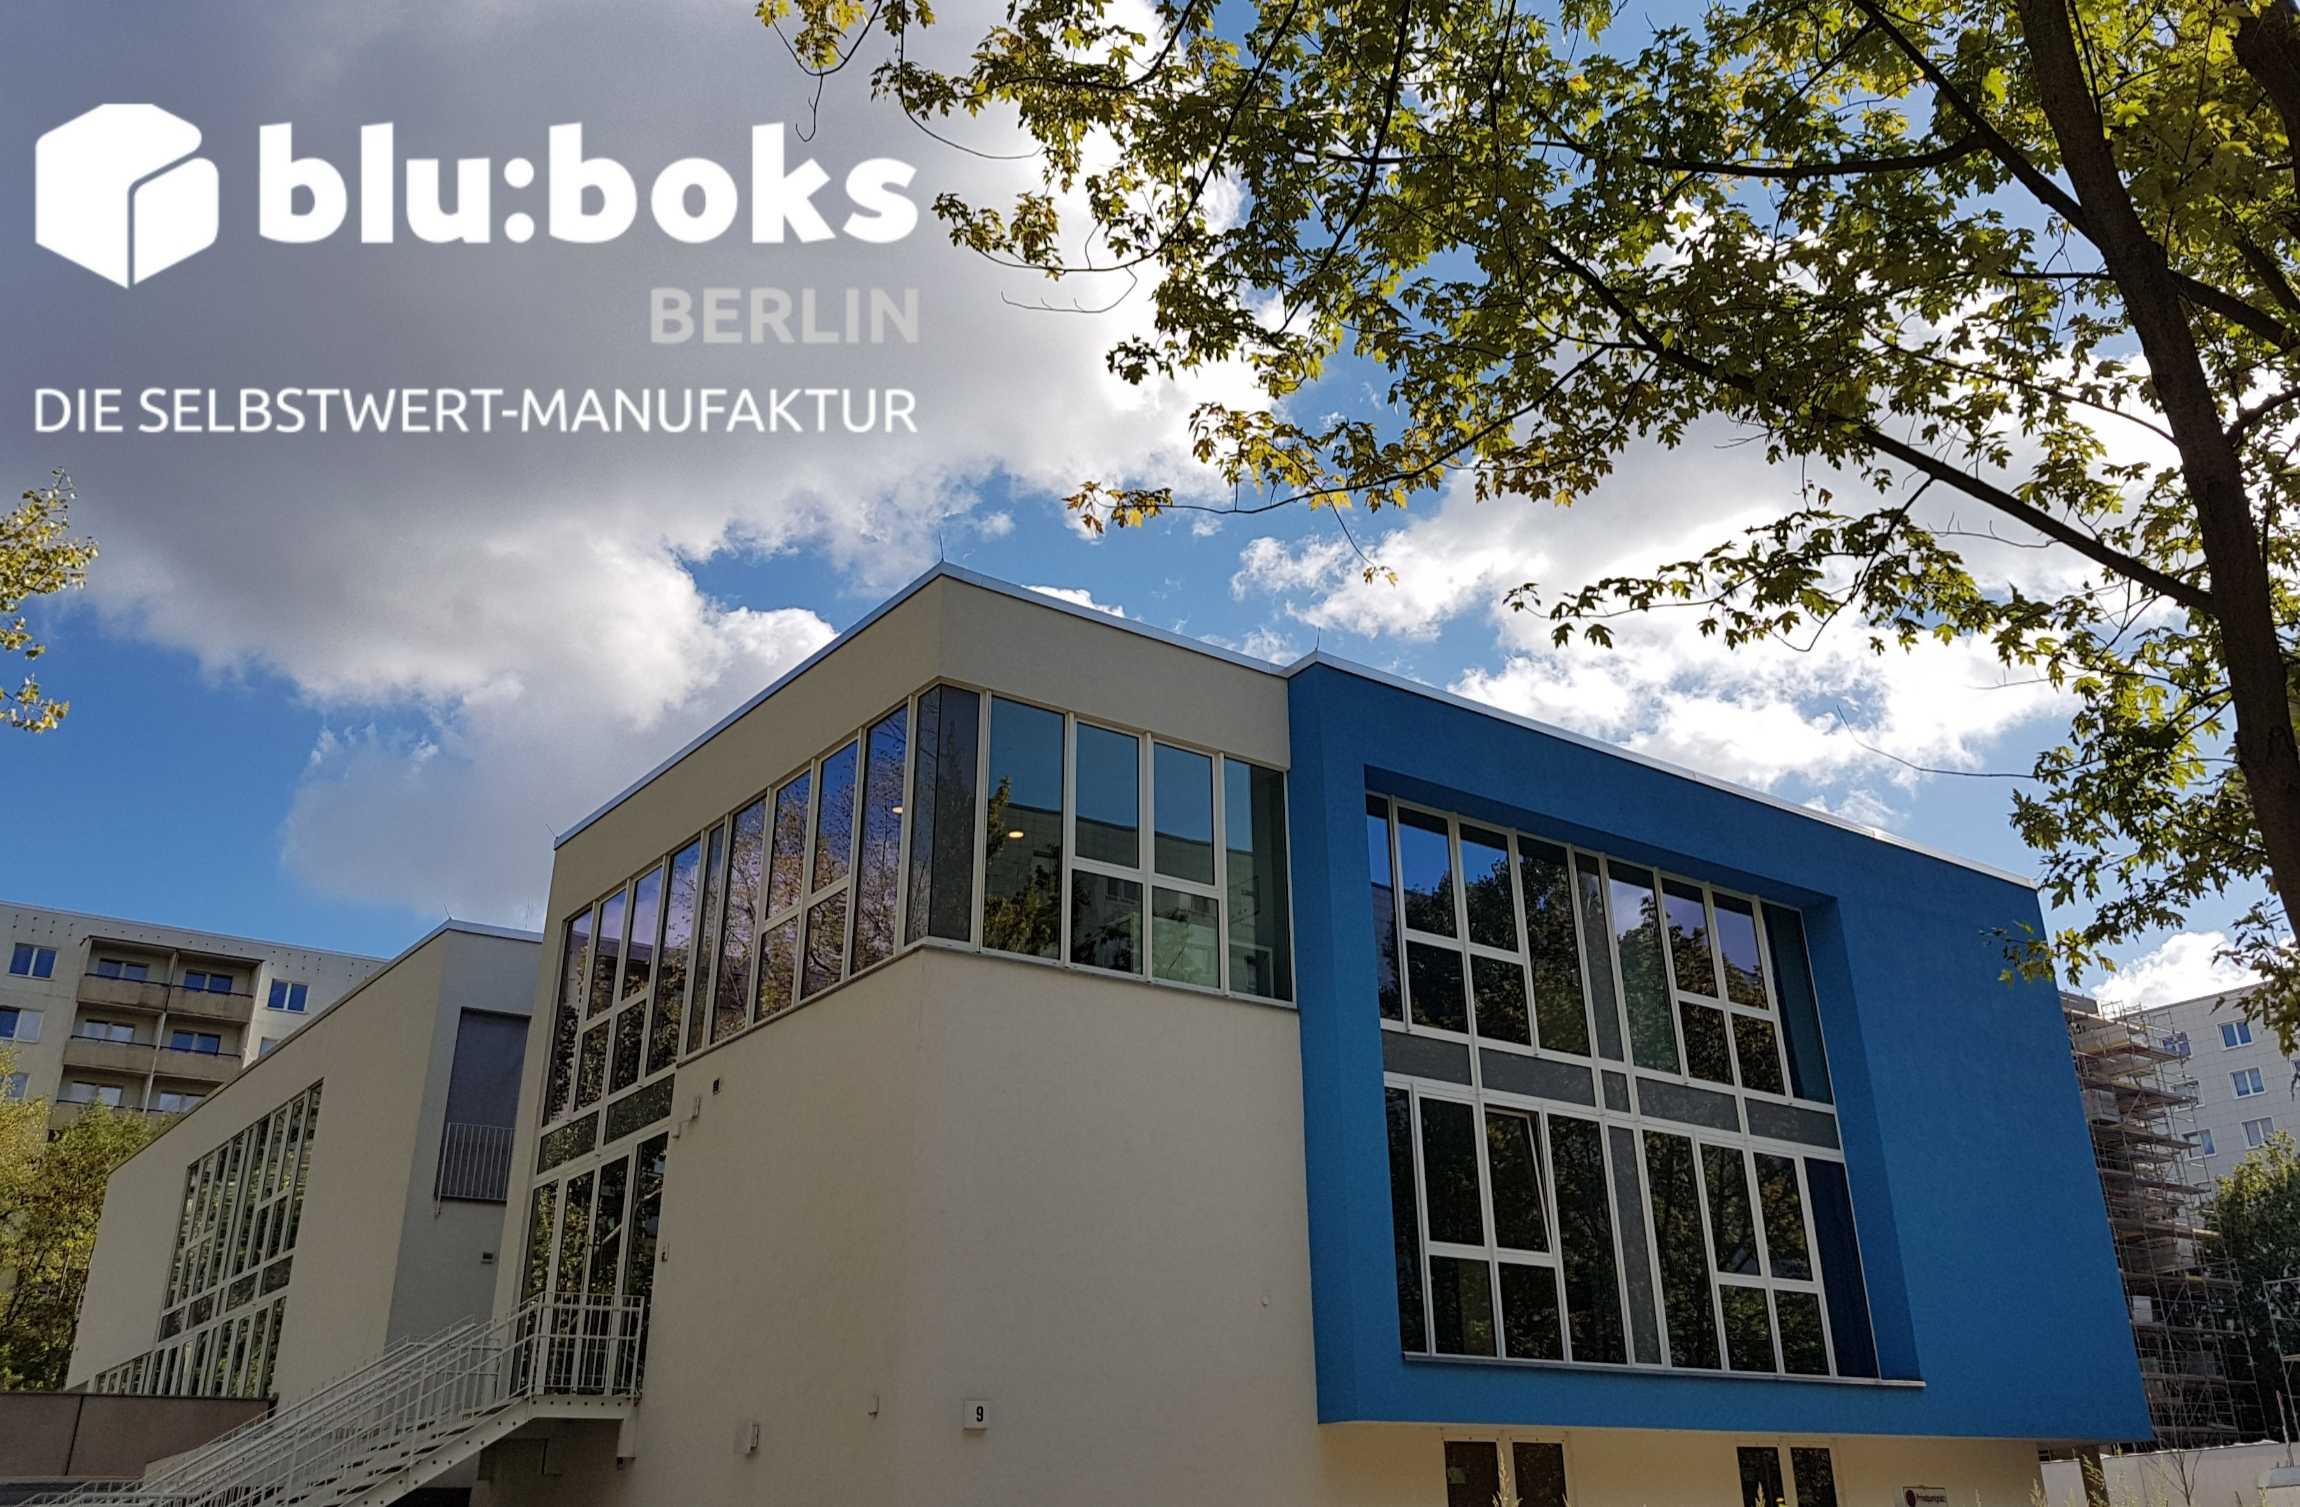 die Selbstwertmanufaktur blu:boks Berlin